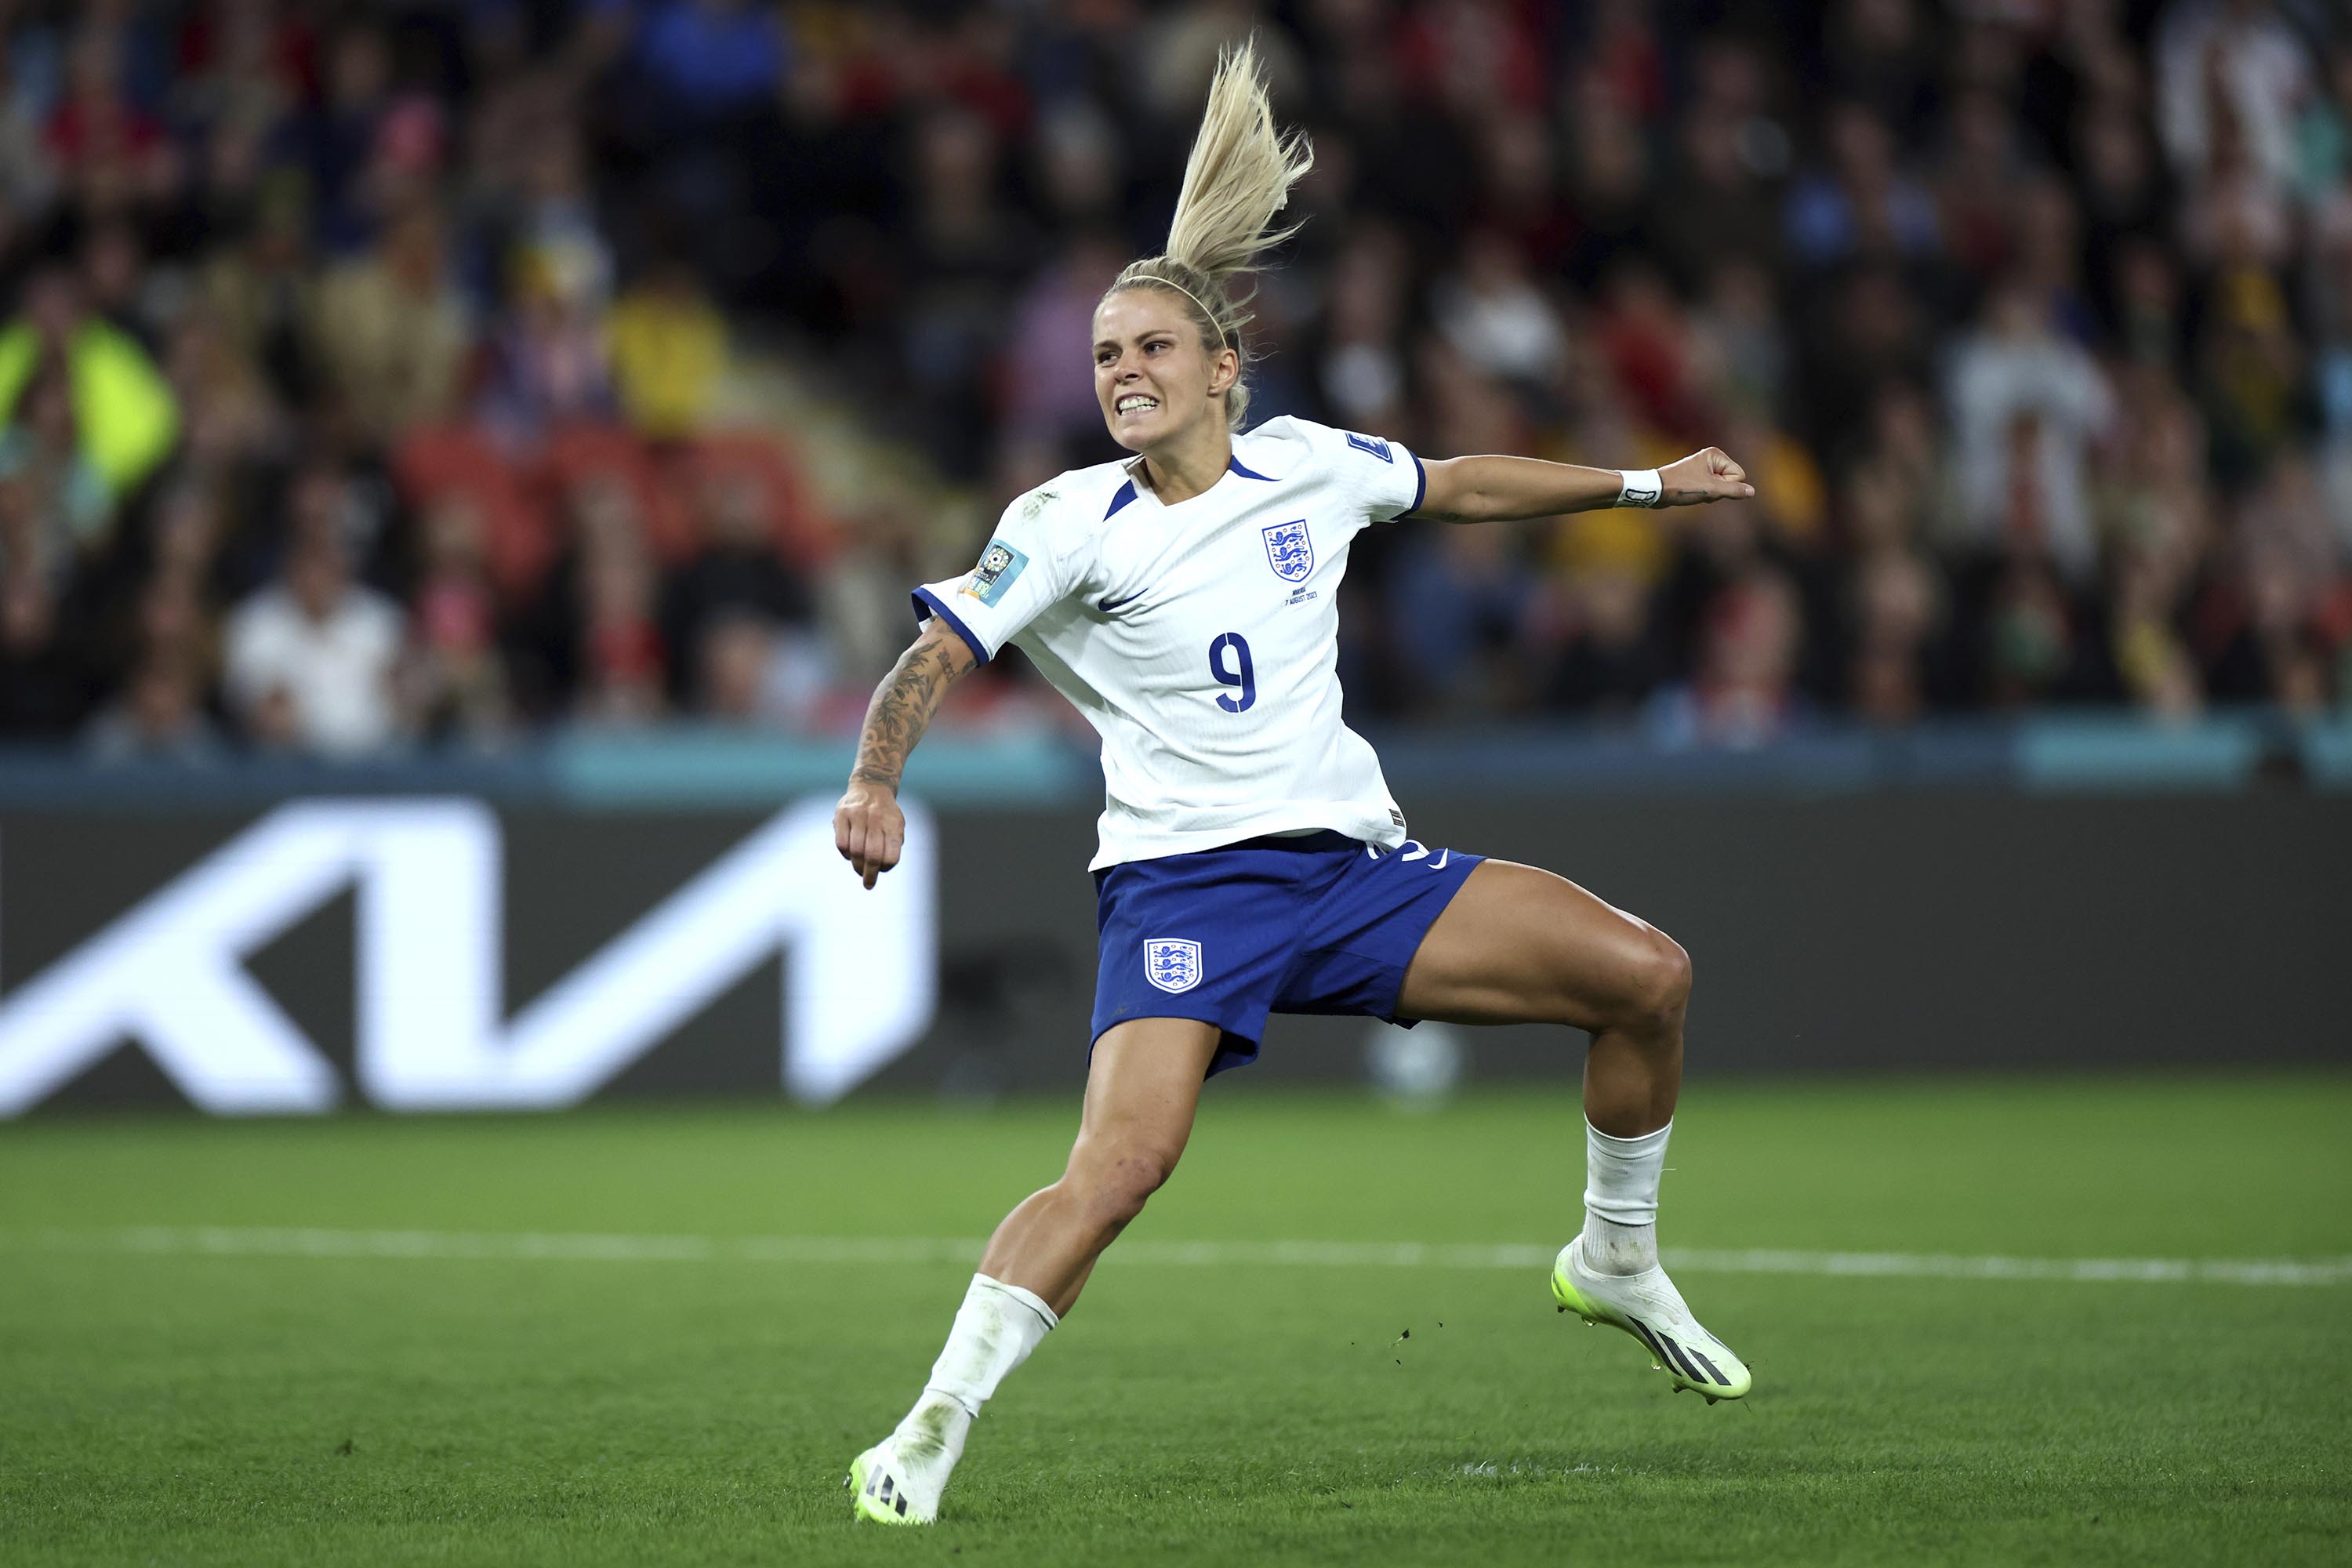 FIFA Women's World Cup: Chloe Kelly's 111kph match-winning penalty